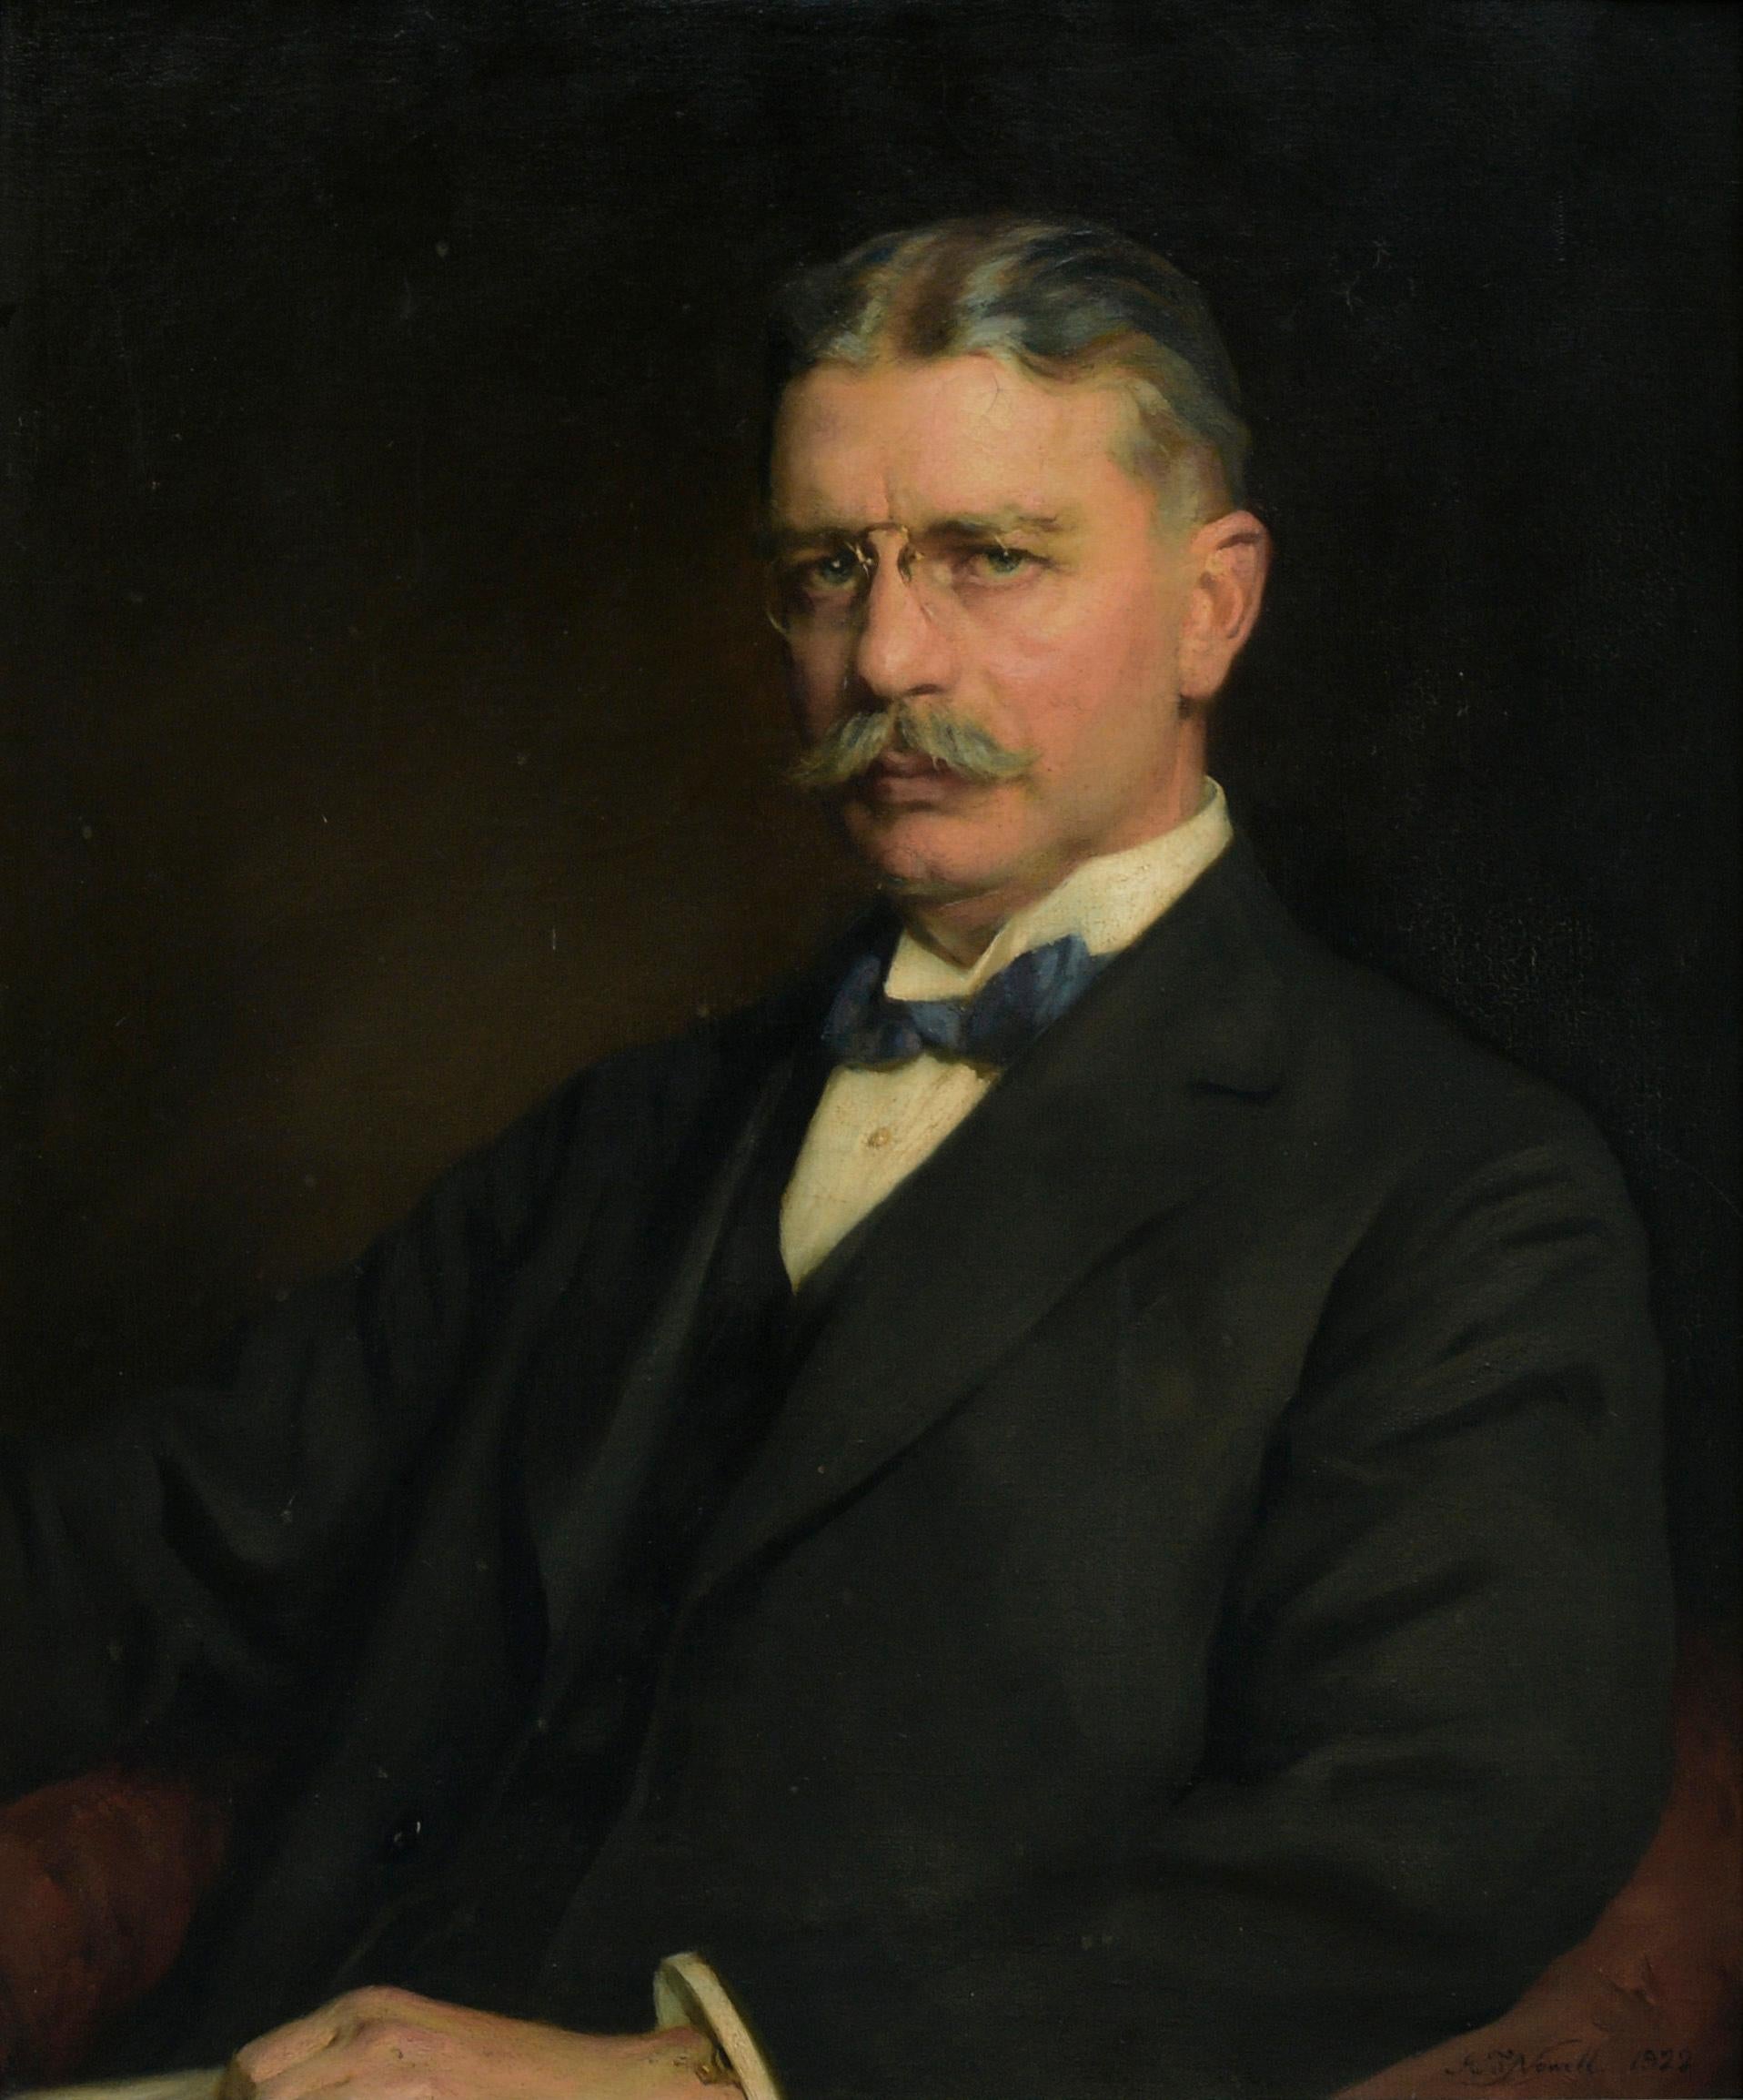 Porträt von Franklin Atwood Park, VP von Singer Mfg. Co. – Painting von Arthur Trevethin Nowell